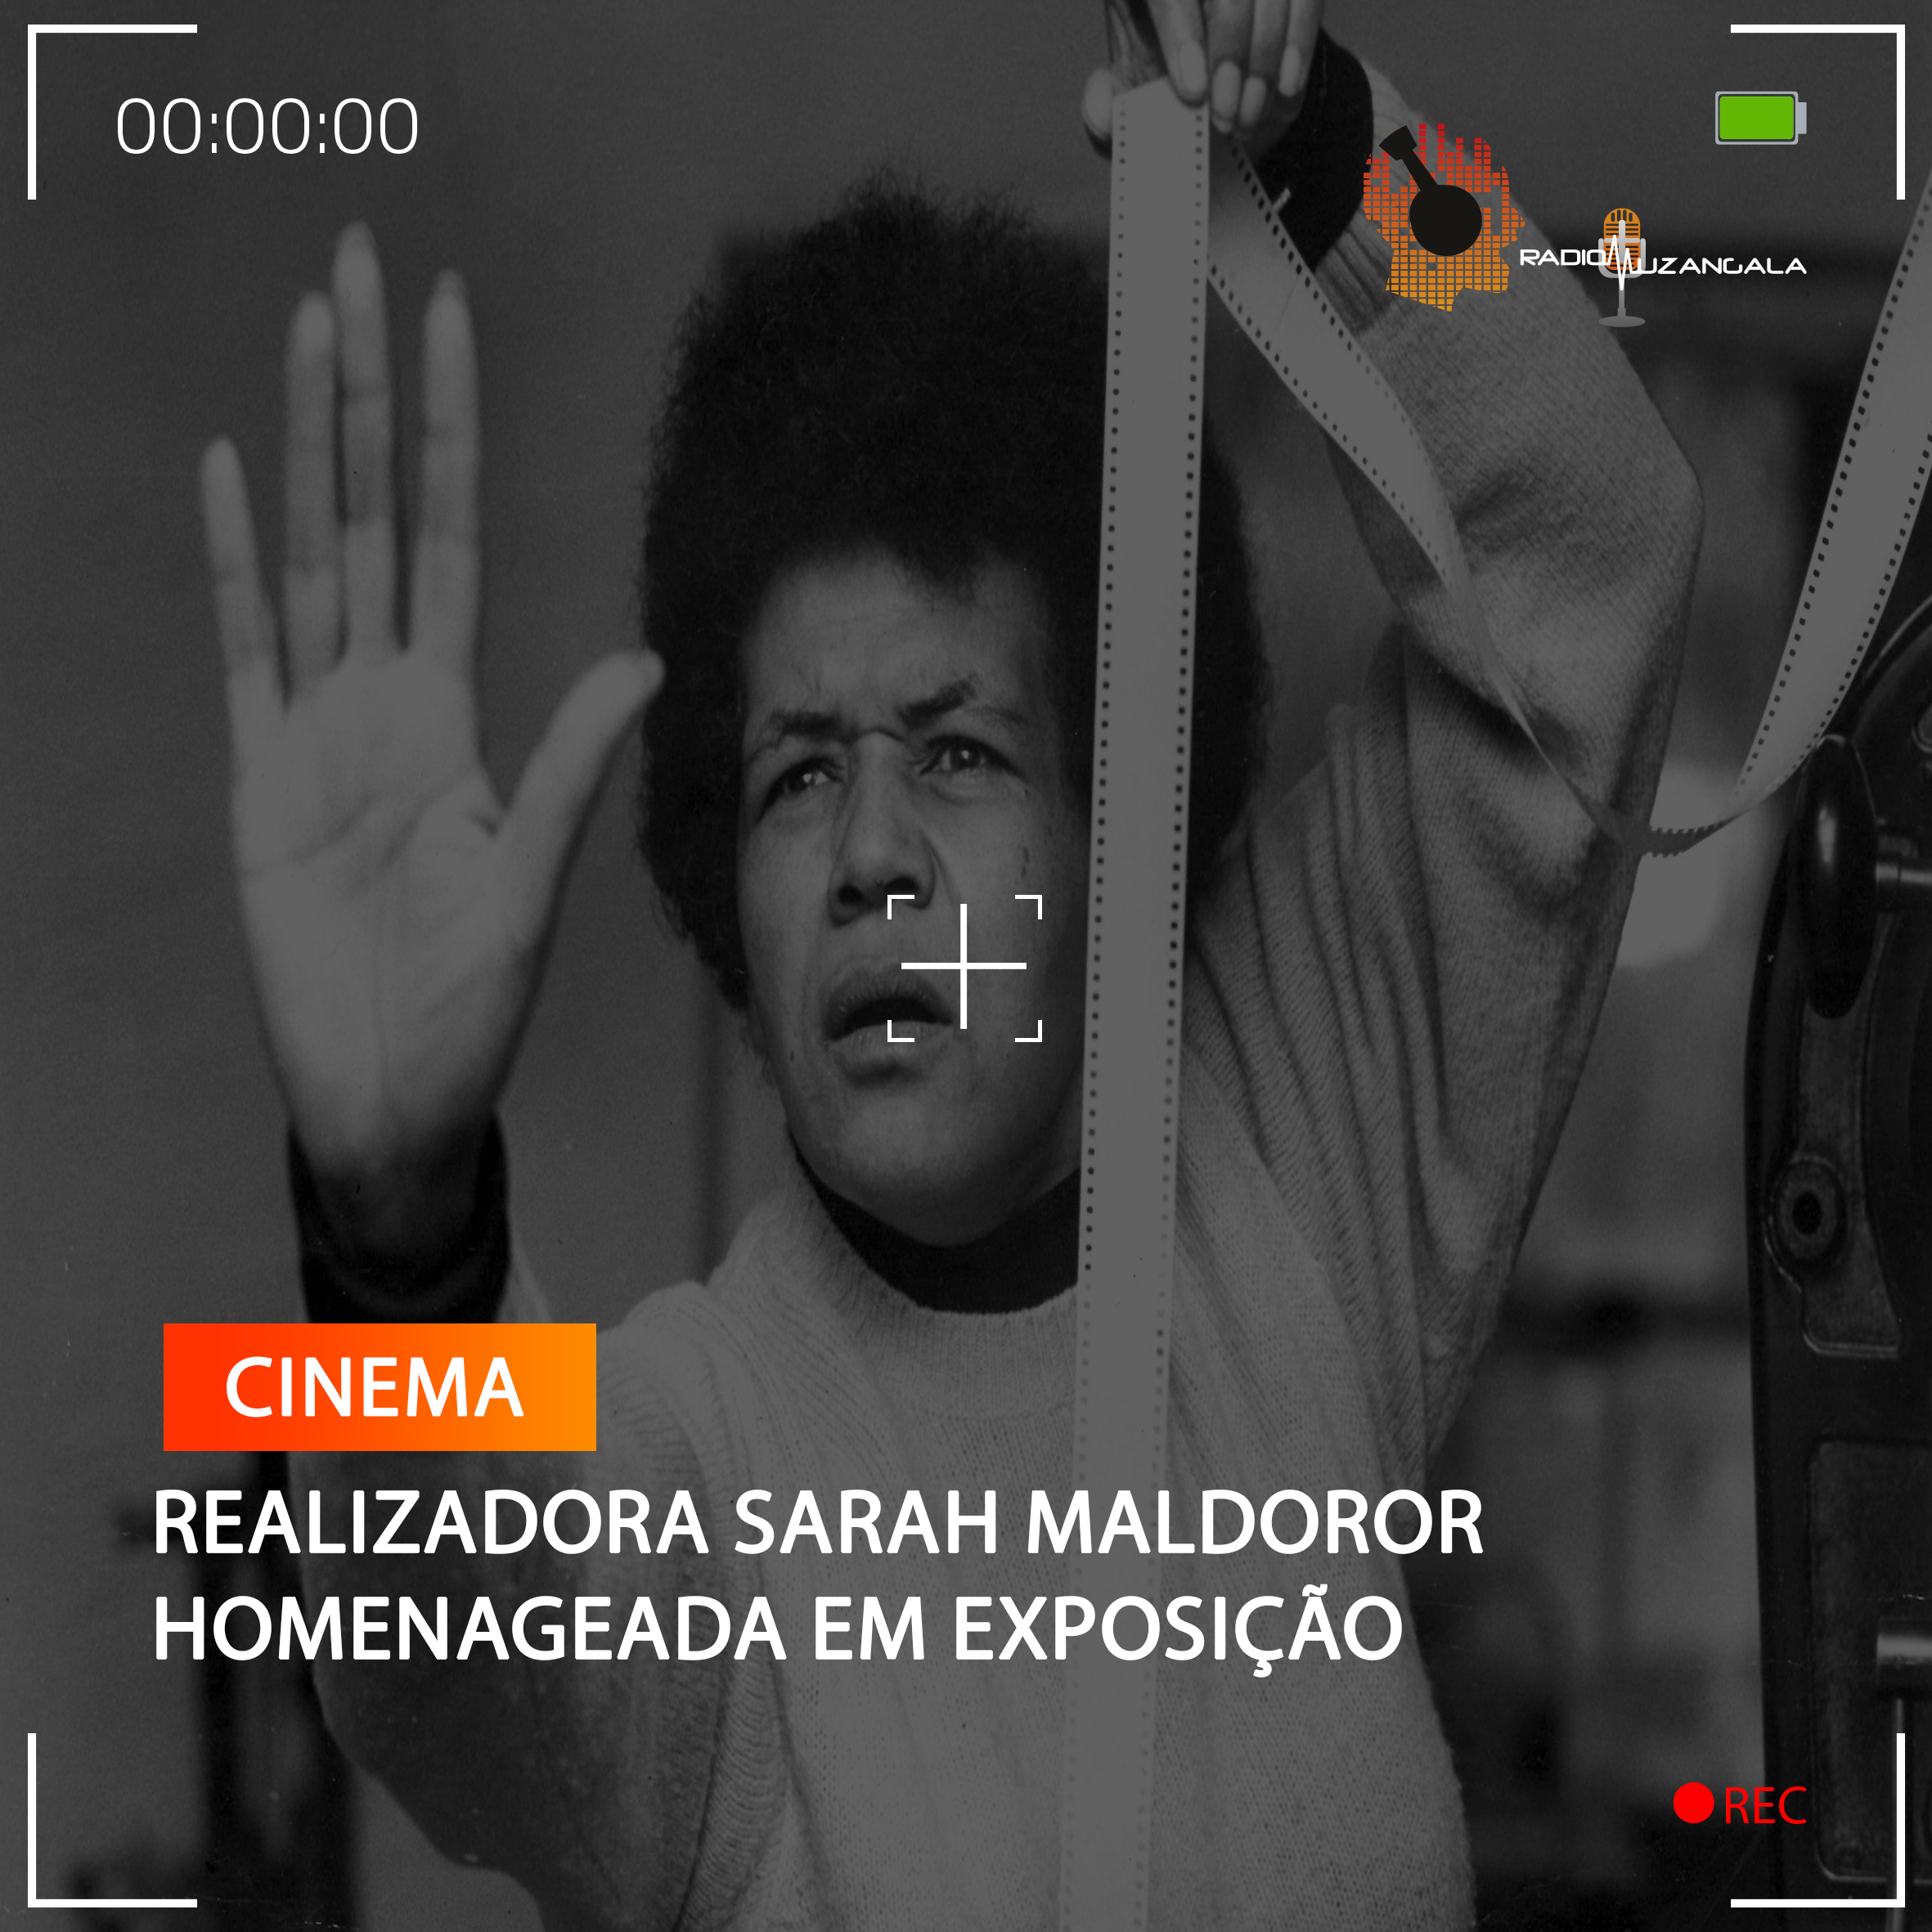  REALIZADORA SARAH MALDOROR HOMENAGEADA EM EXPOSIÇÃO